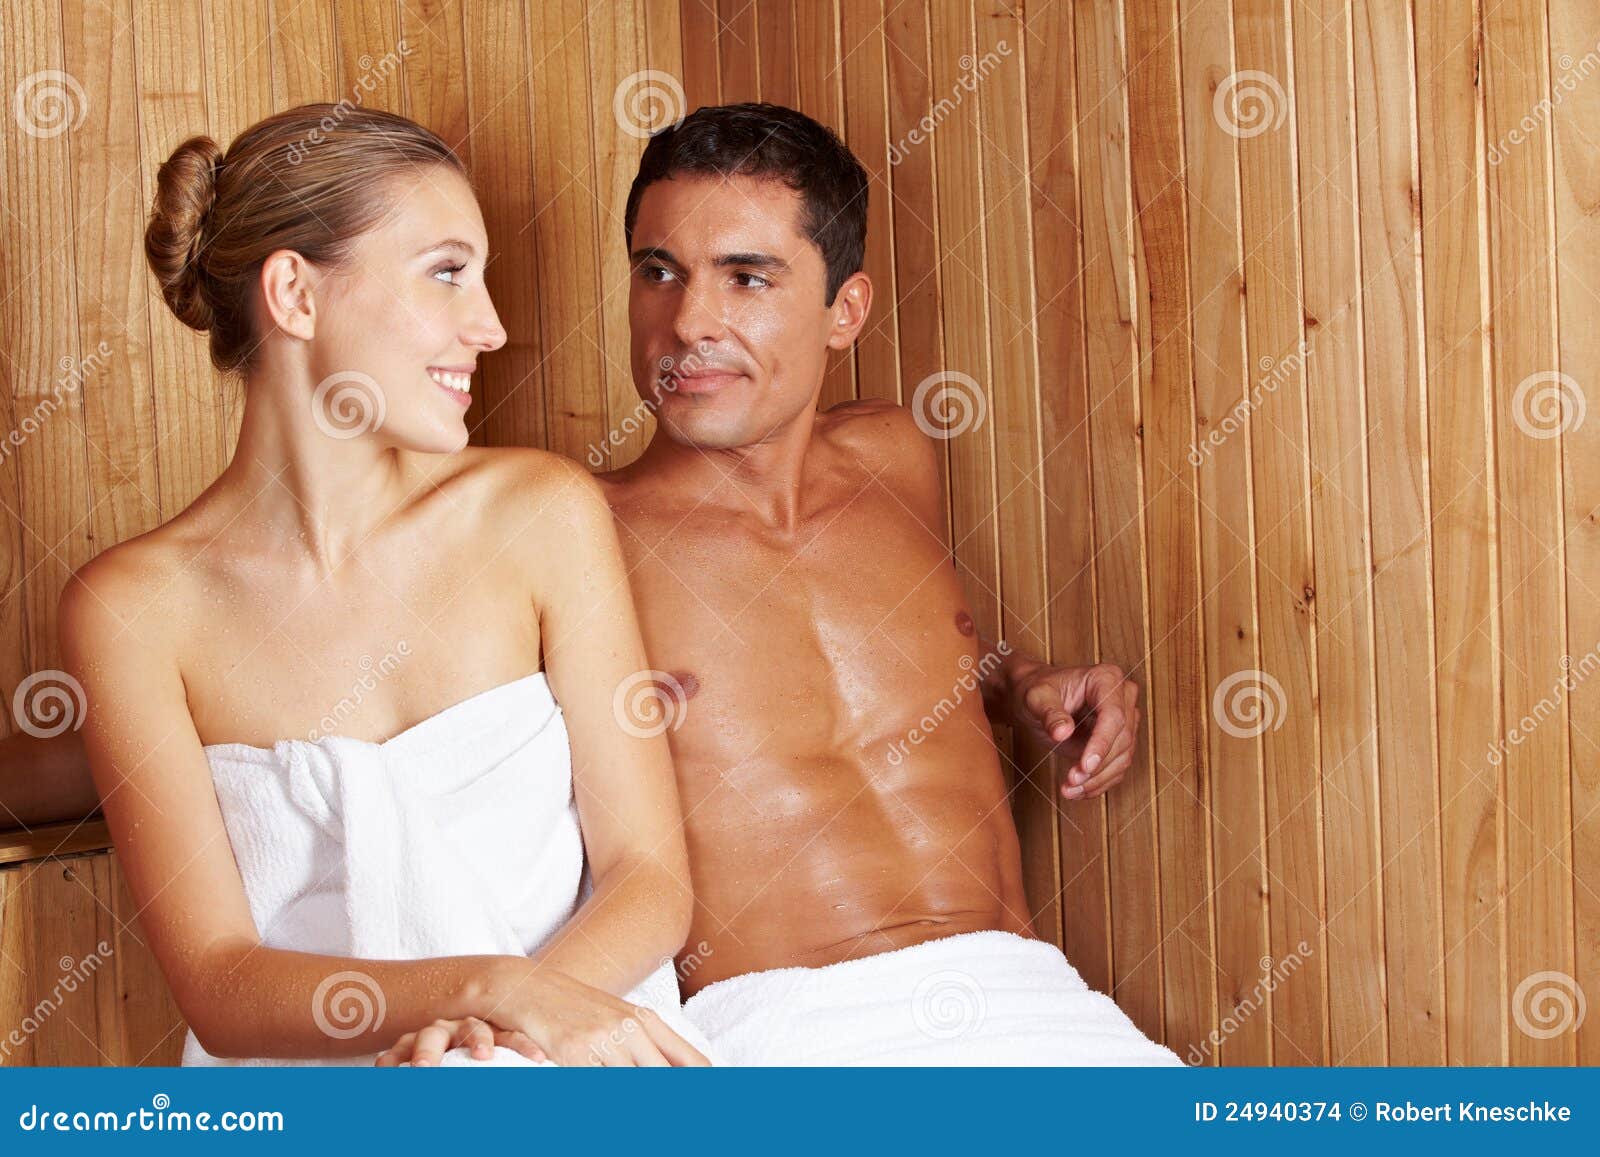 Мужчины и женщины вместе в сауне